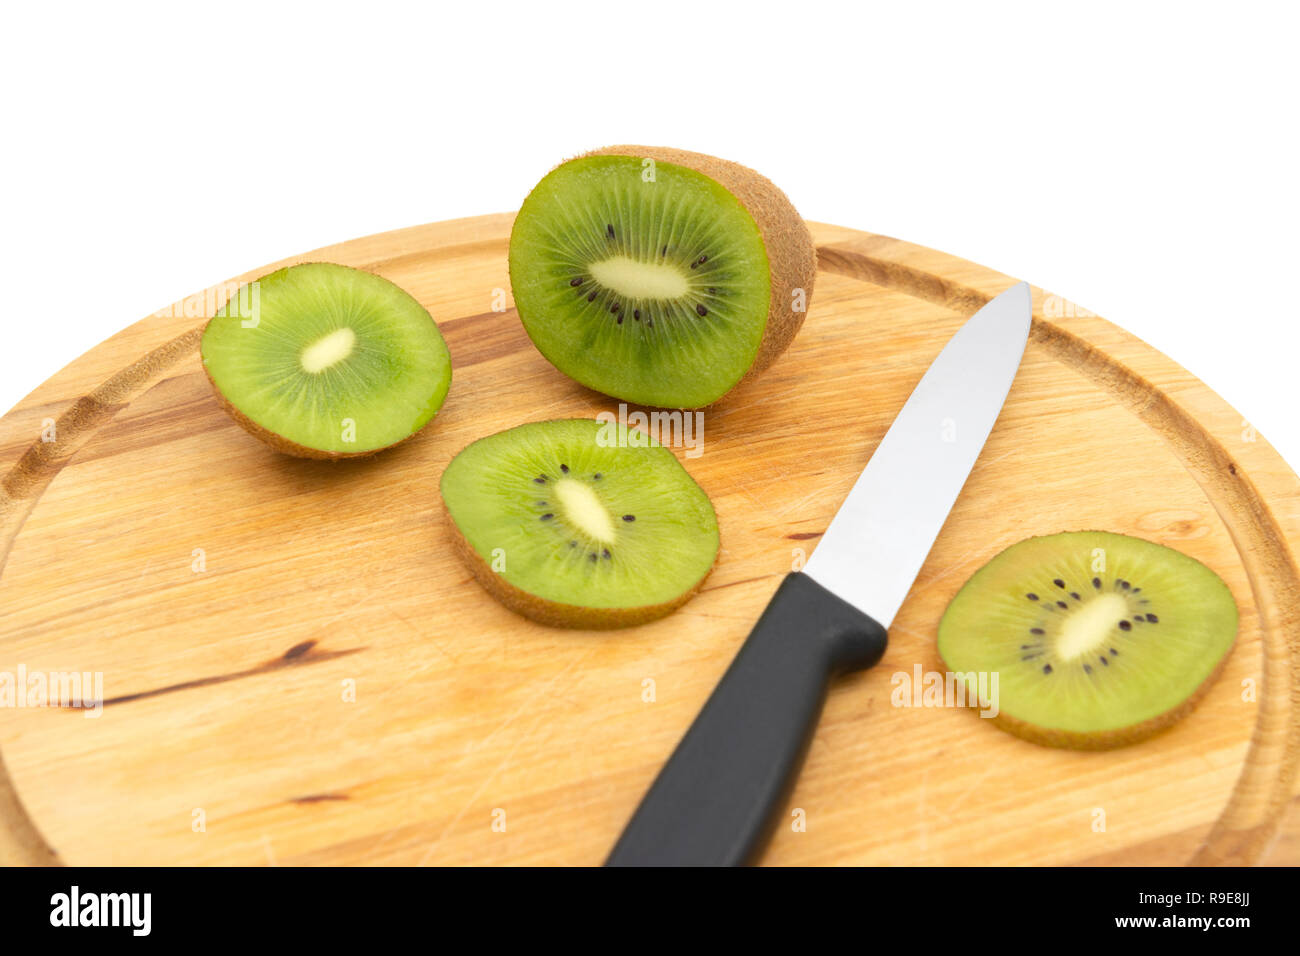 Le kiwi vert frais avec un couteau de cuisine et couper les tranches de fruits sur une planche à découper en bois. Les graines noires et chair verte afficher dans la section efficace. Banque D'Images